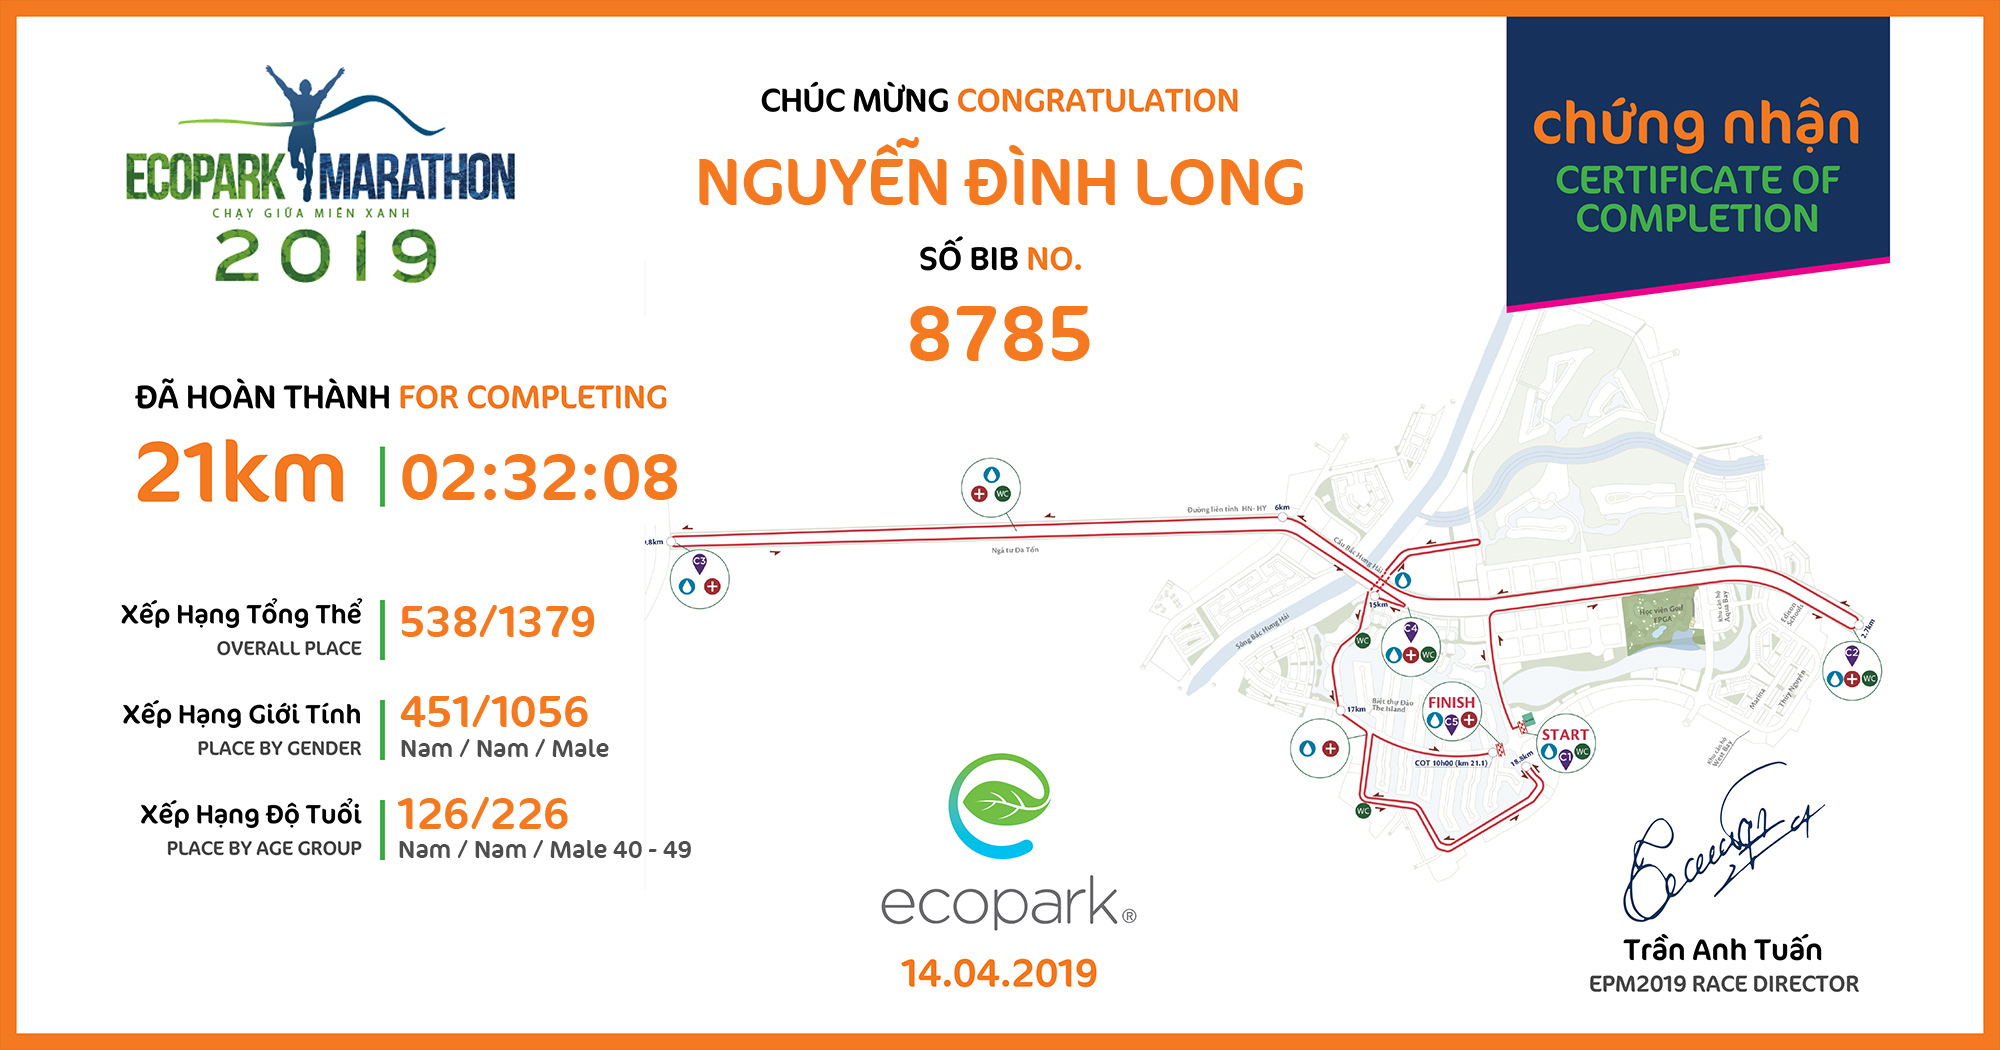 8785 - Nguyễn Đình Long